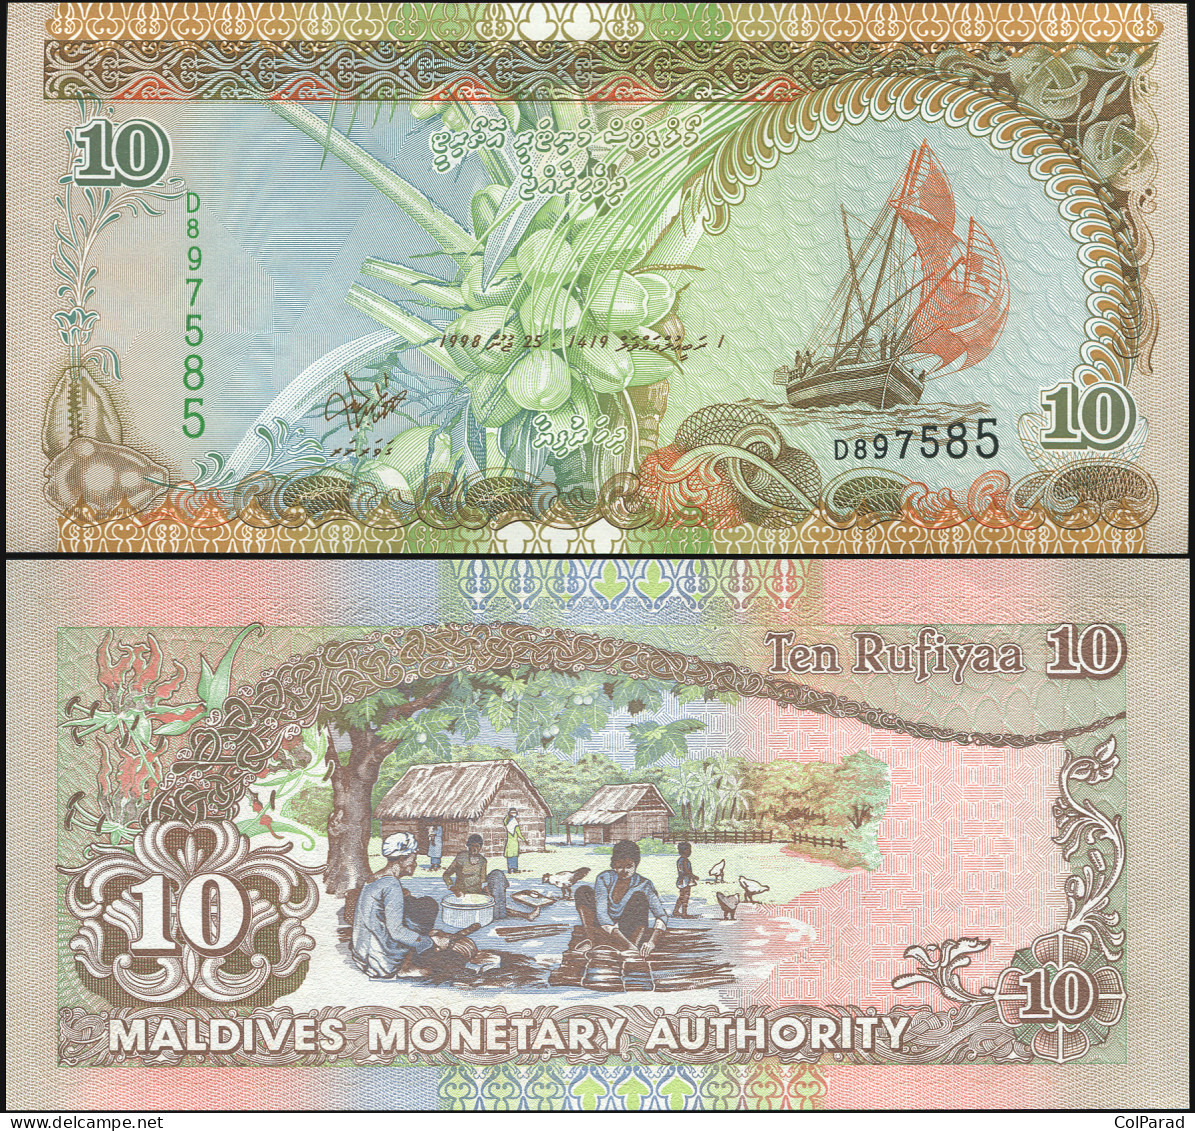 MALDIVES 10 RUFIYAA - 25.10.1998 - Paper Unc - P.19b Banknote - Maldives